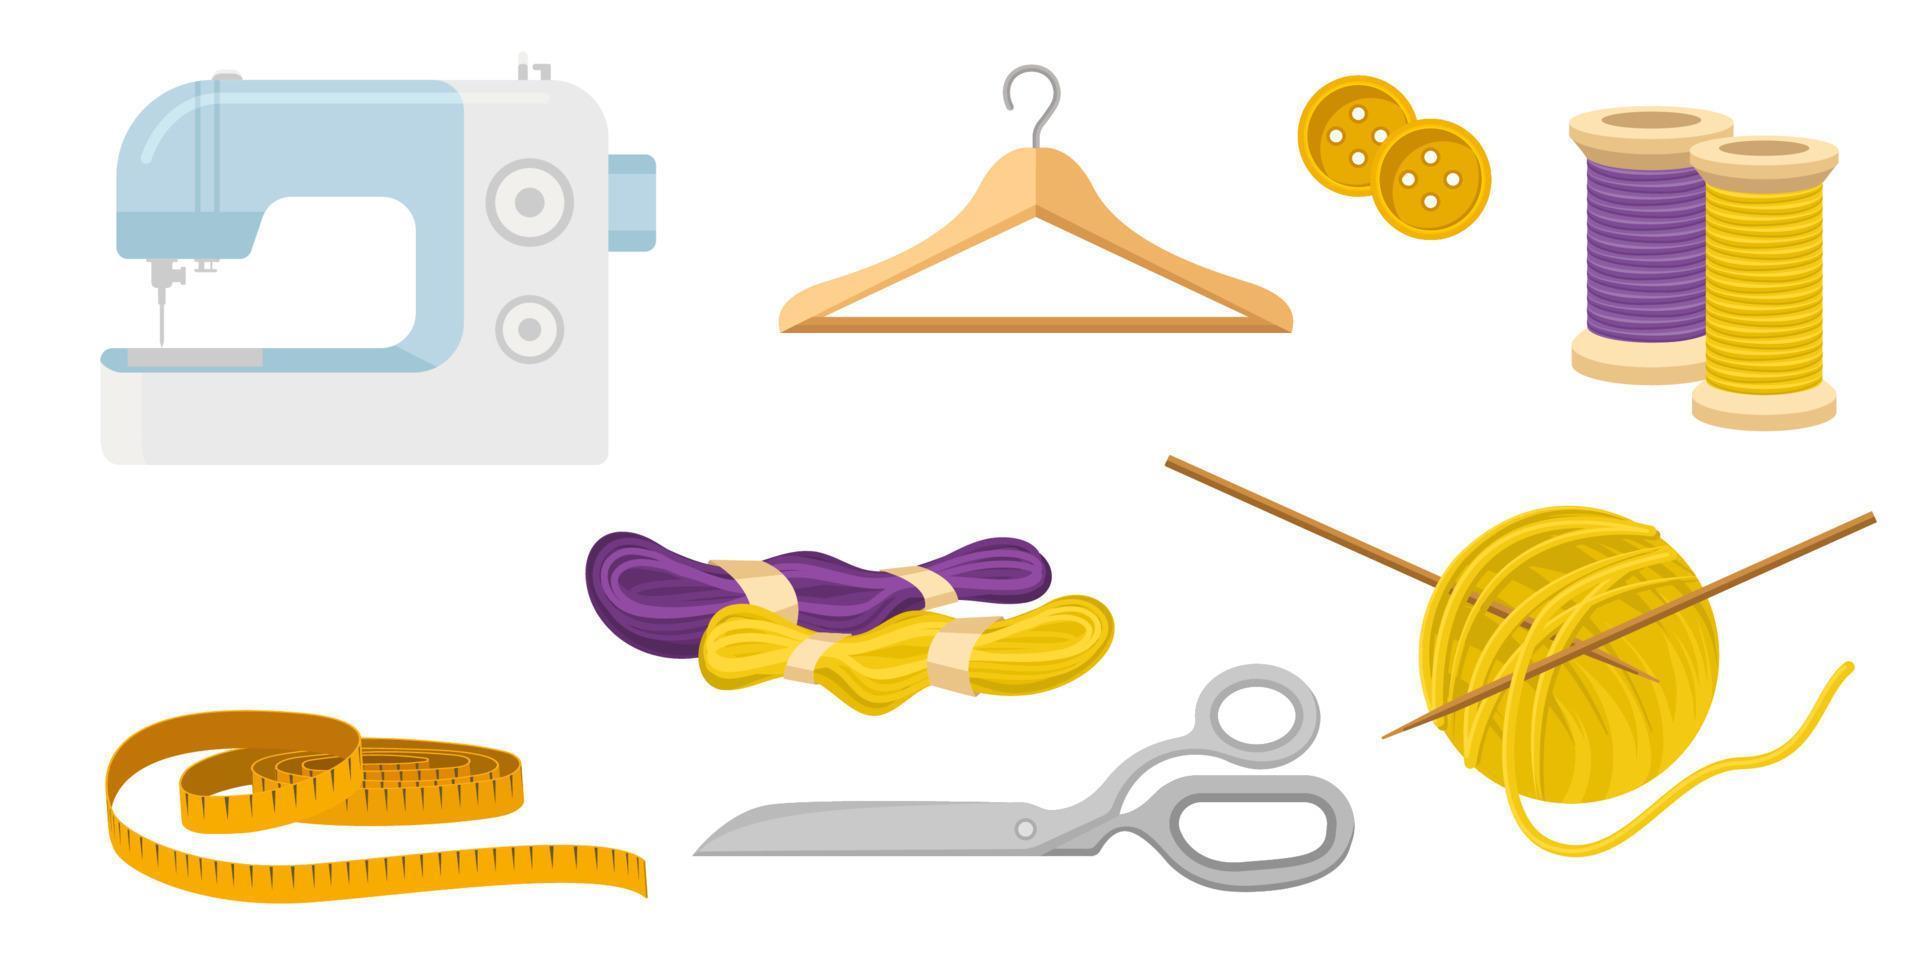 collezione impostato di cucire kit cucire macchina forbici lana filo cappotto appendiabiti misurazione nastro pulsante vettore